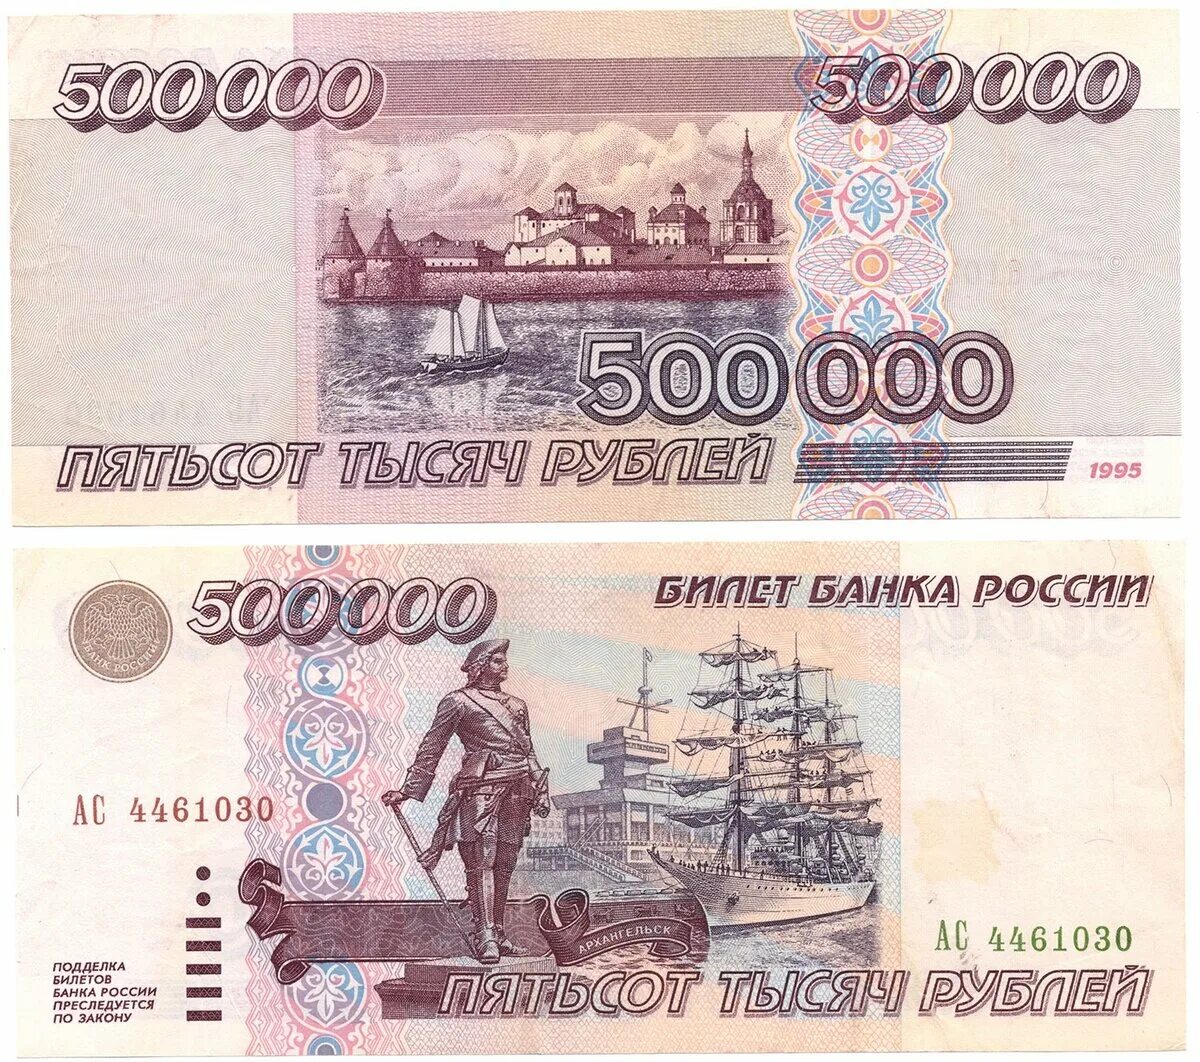 500 рублей россии в долларах. 500 000 Рублей 1995. Купюра 500 000 рублей 1995 года. 500 000 Рублей 1995 года. 500 000 Рублей купюра.